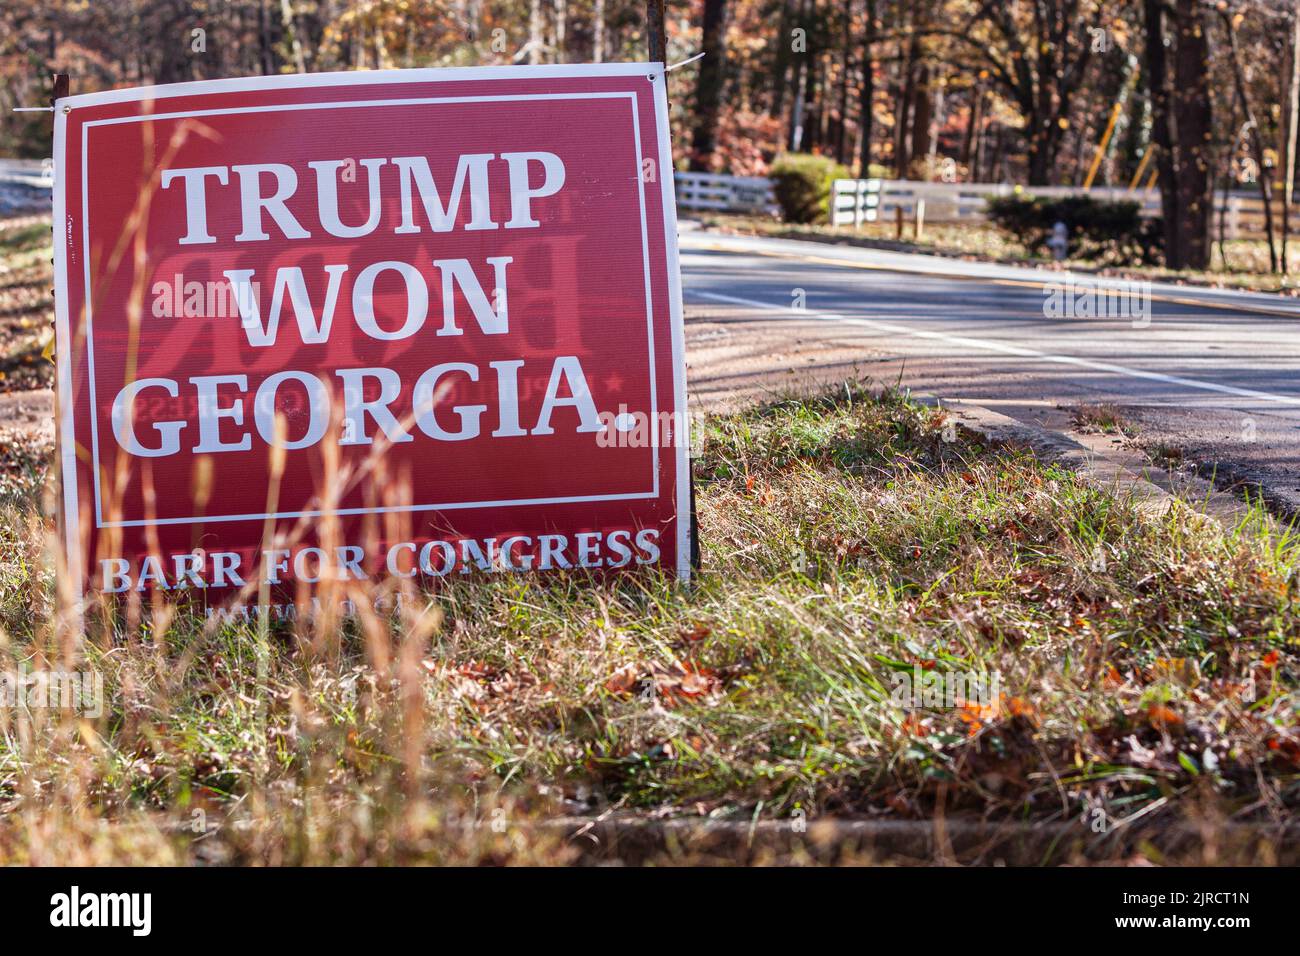 LAWRENCEVILLE, GA - 20 DE NOVIEMBRE: Un cartel de campaña que dice 'Trump ganó Georgia' se sienta en la hierba junto a una calle el 20 de noviembre de 2021 en Lawrenceville. Foto de stock